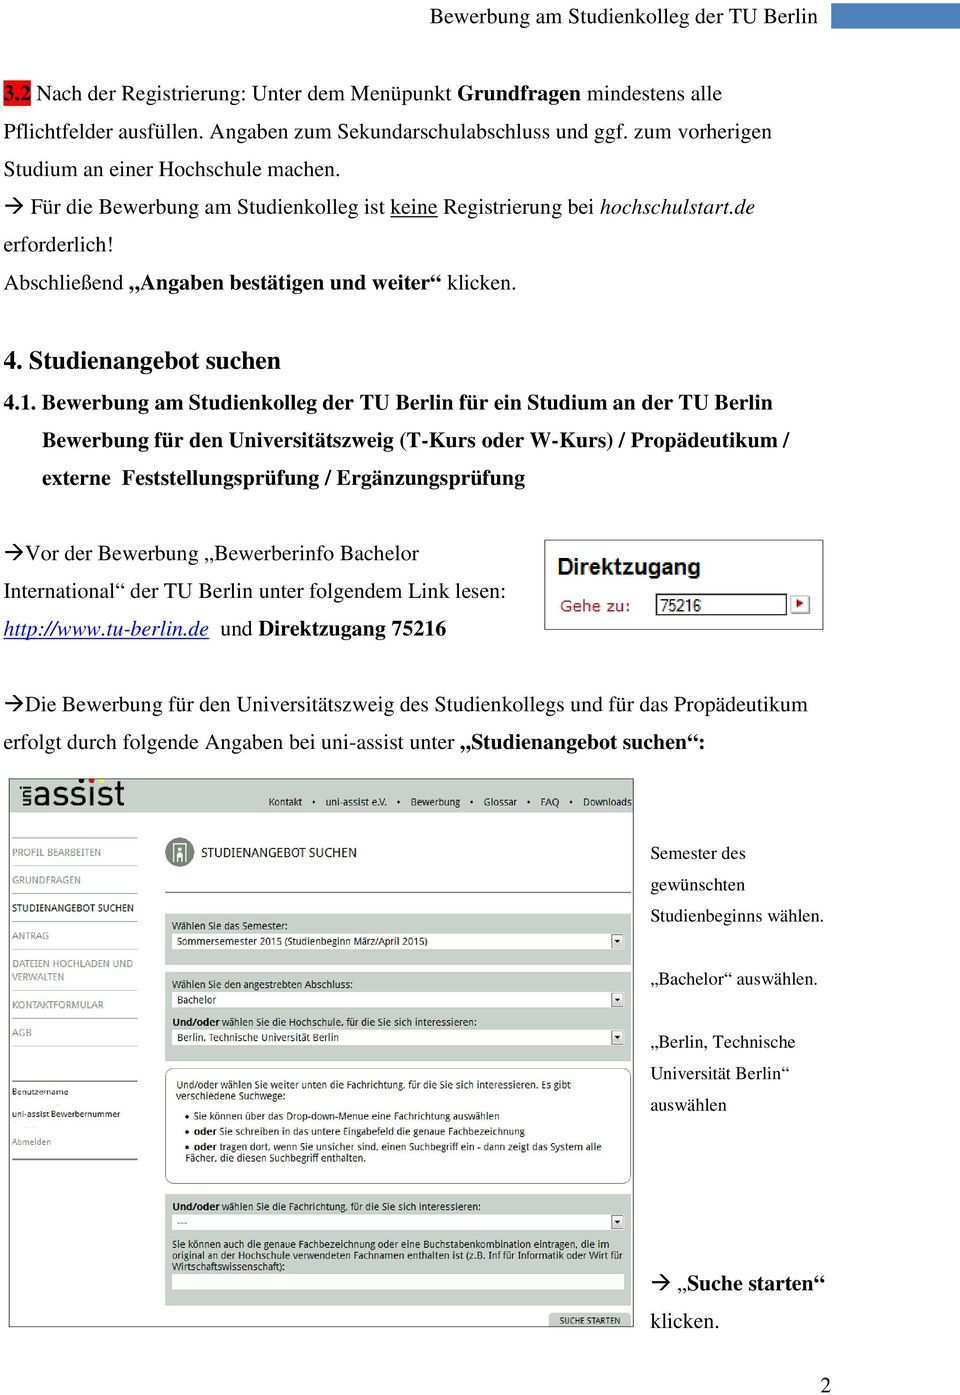 Leitfaden Zur Bewerbung Am Studienkolleg Der Tu Berlin Pdf Kostenfreier Download